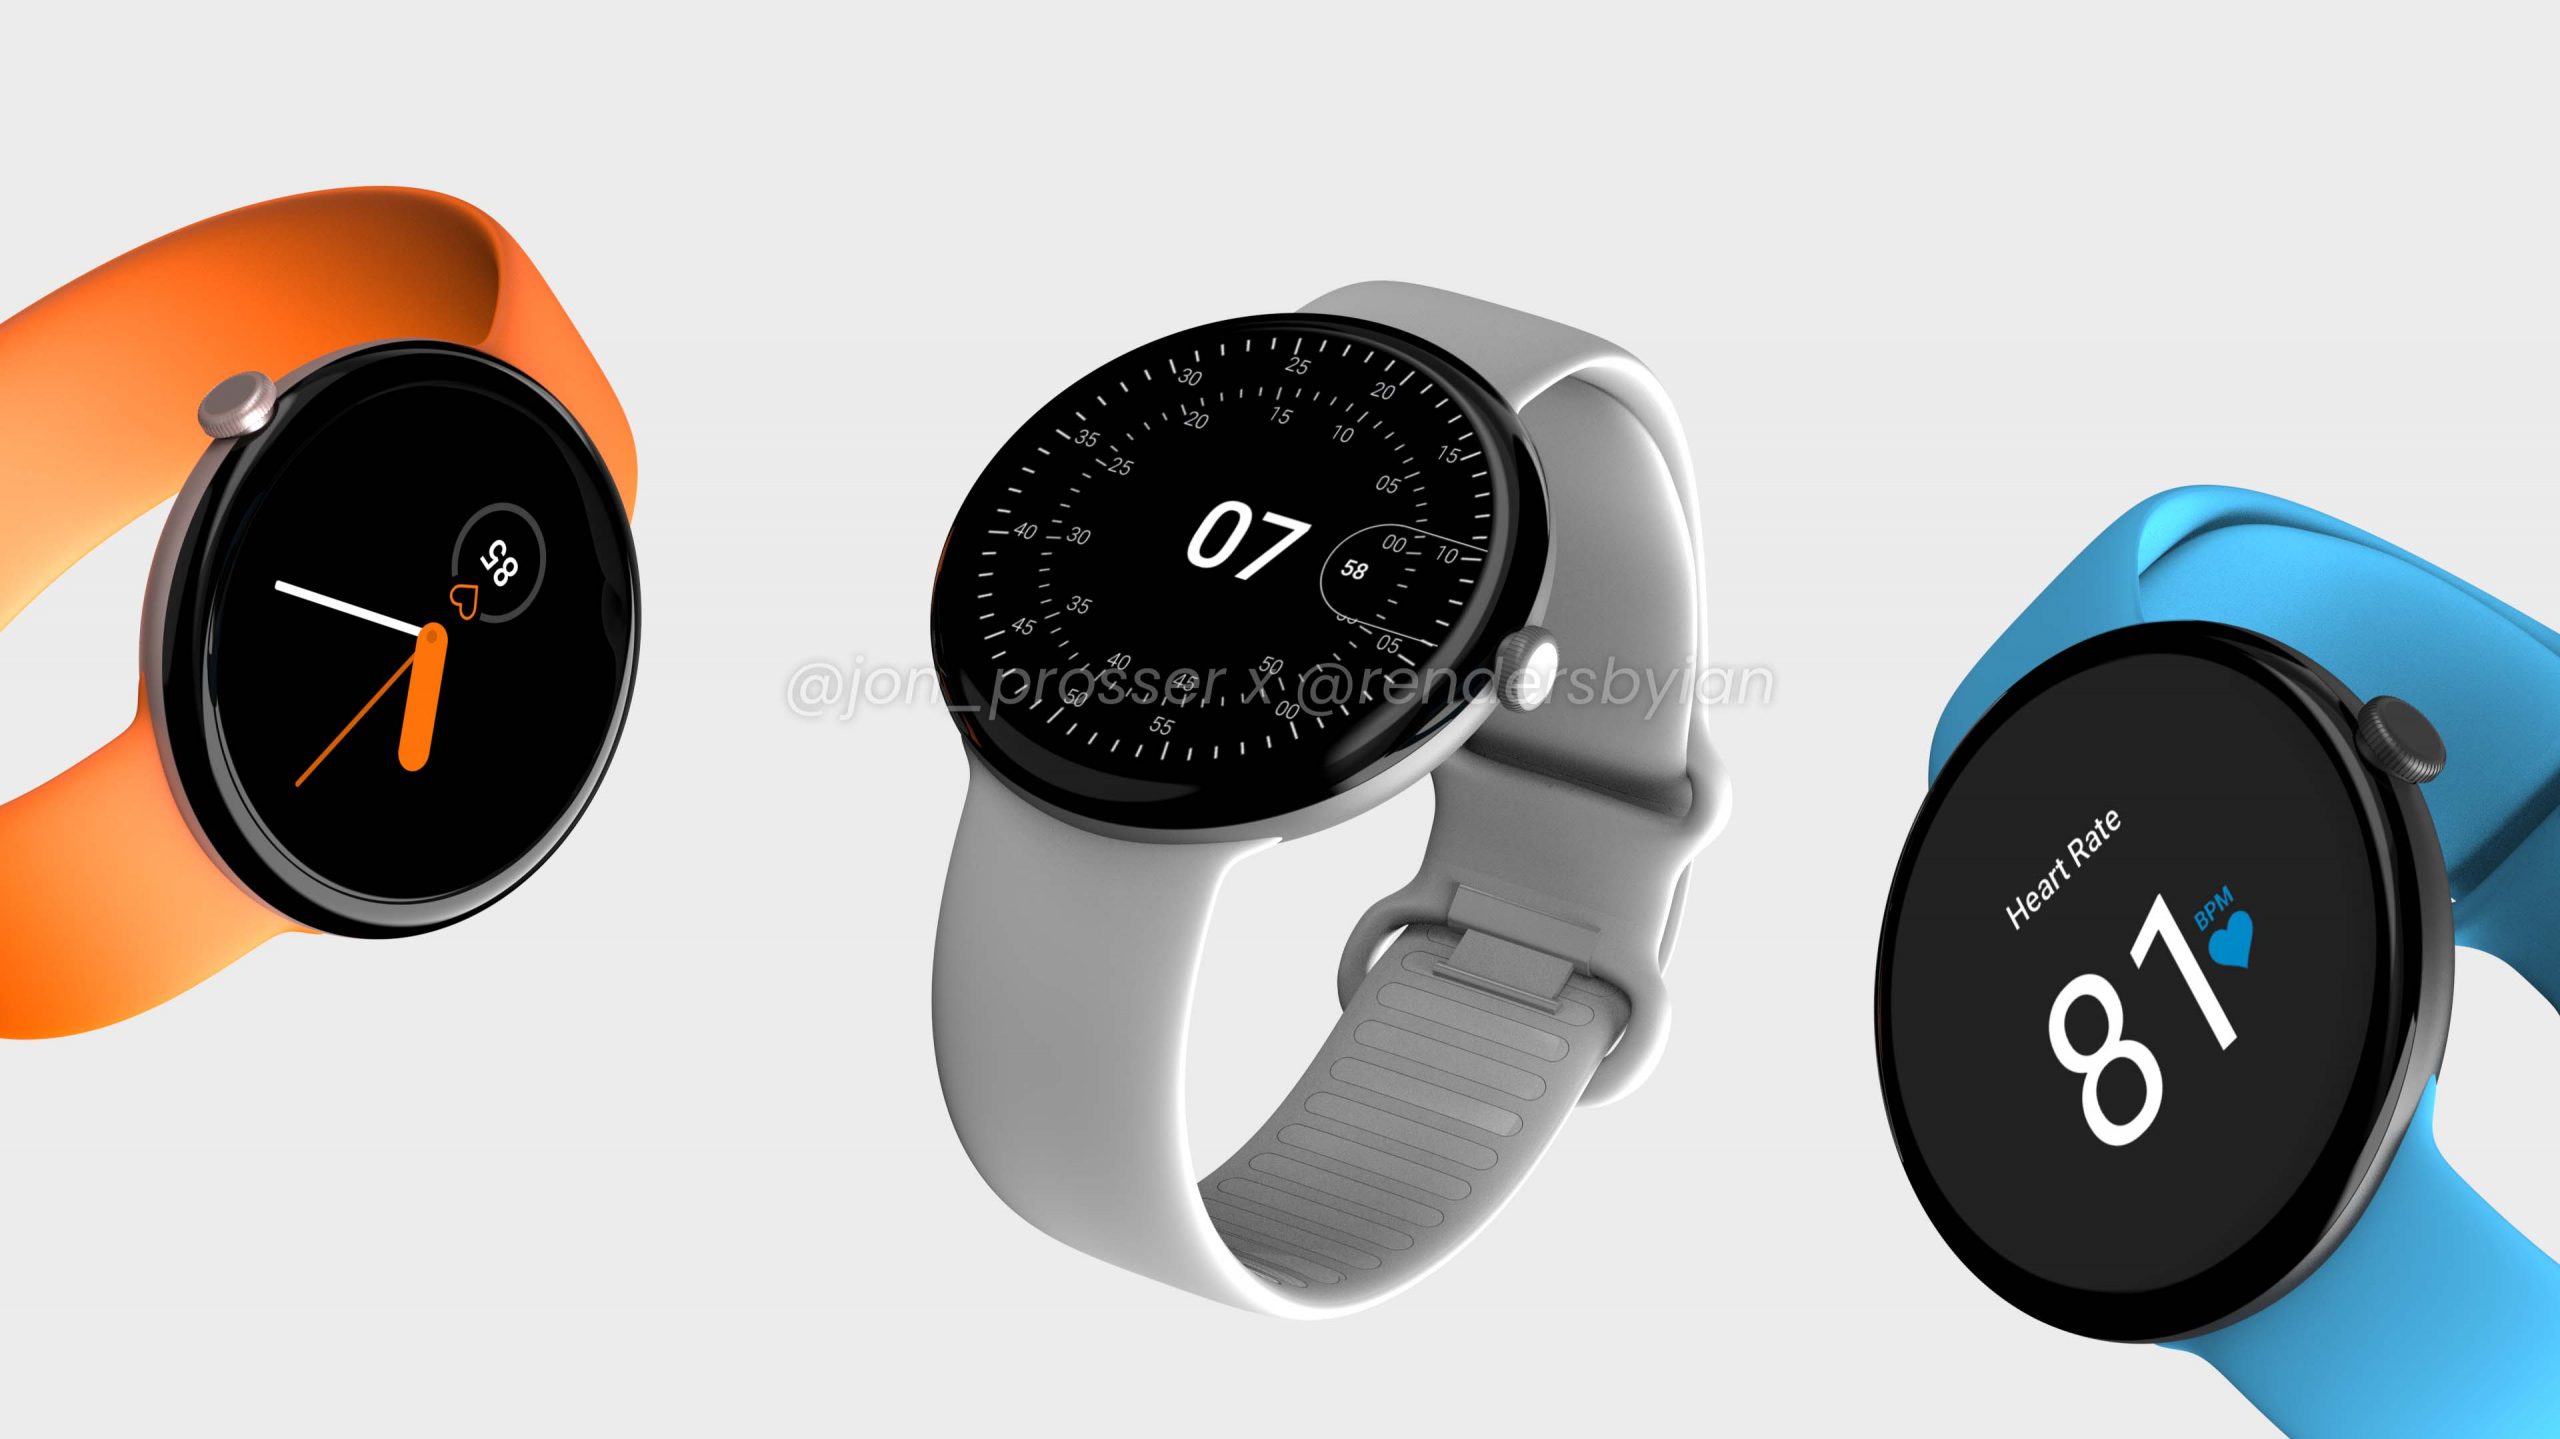 Θα παρουσιάσει η Google το Pixel Watch μέσα στο 2022;